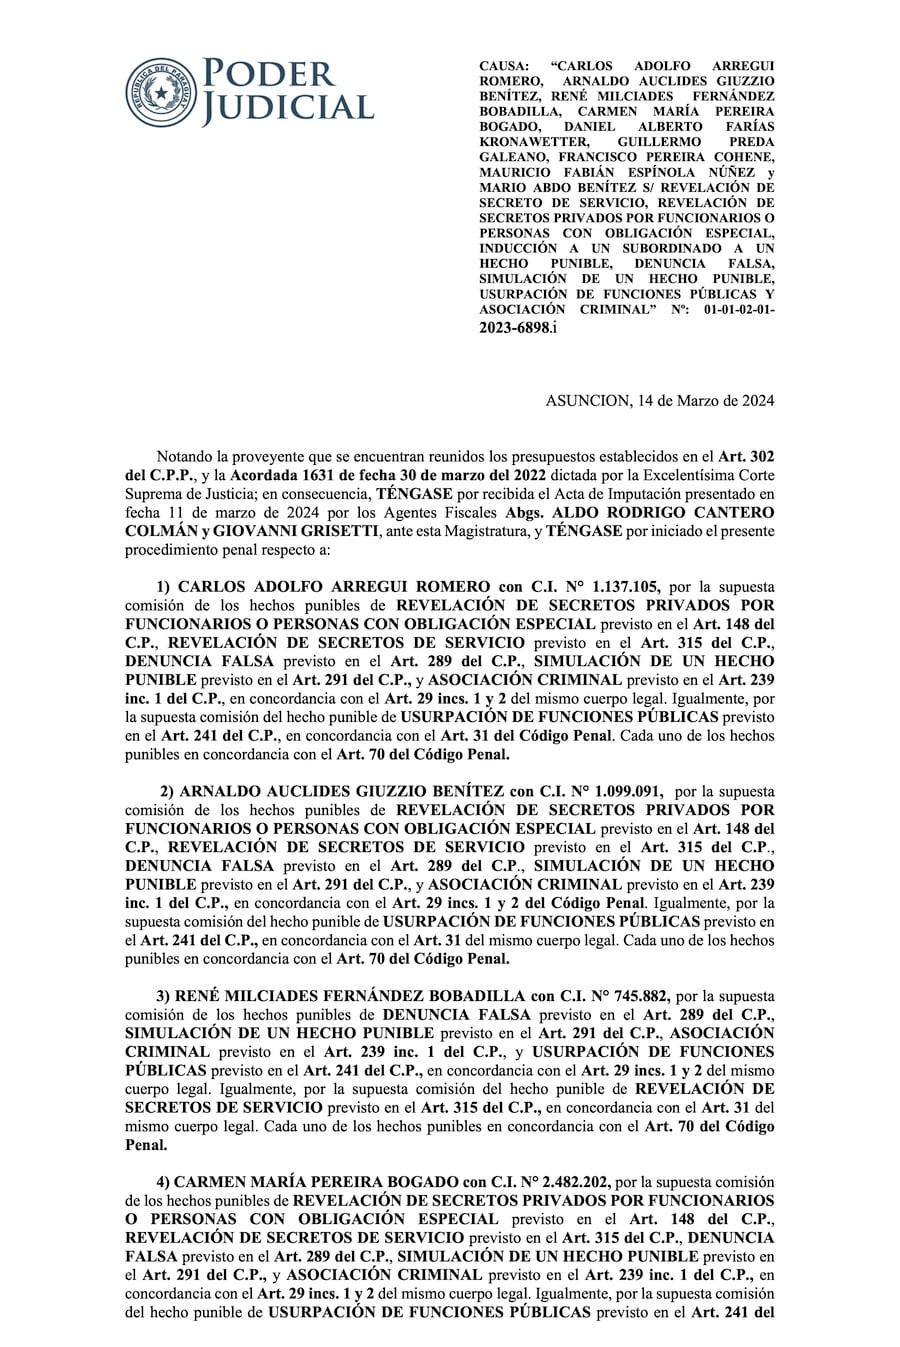 Parte del documento de la admisión de imputación